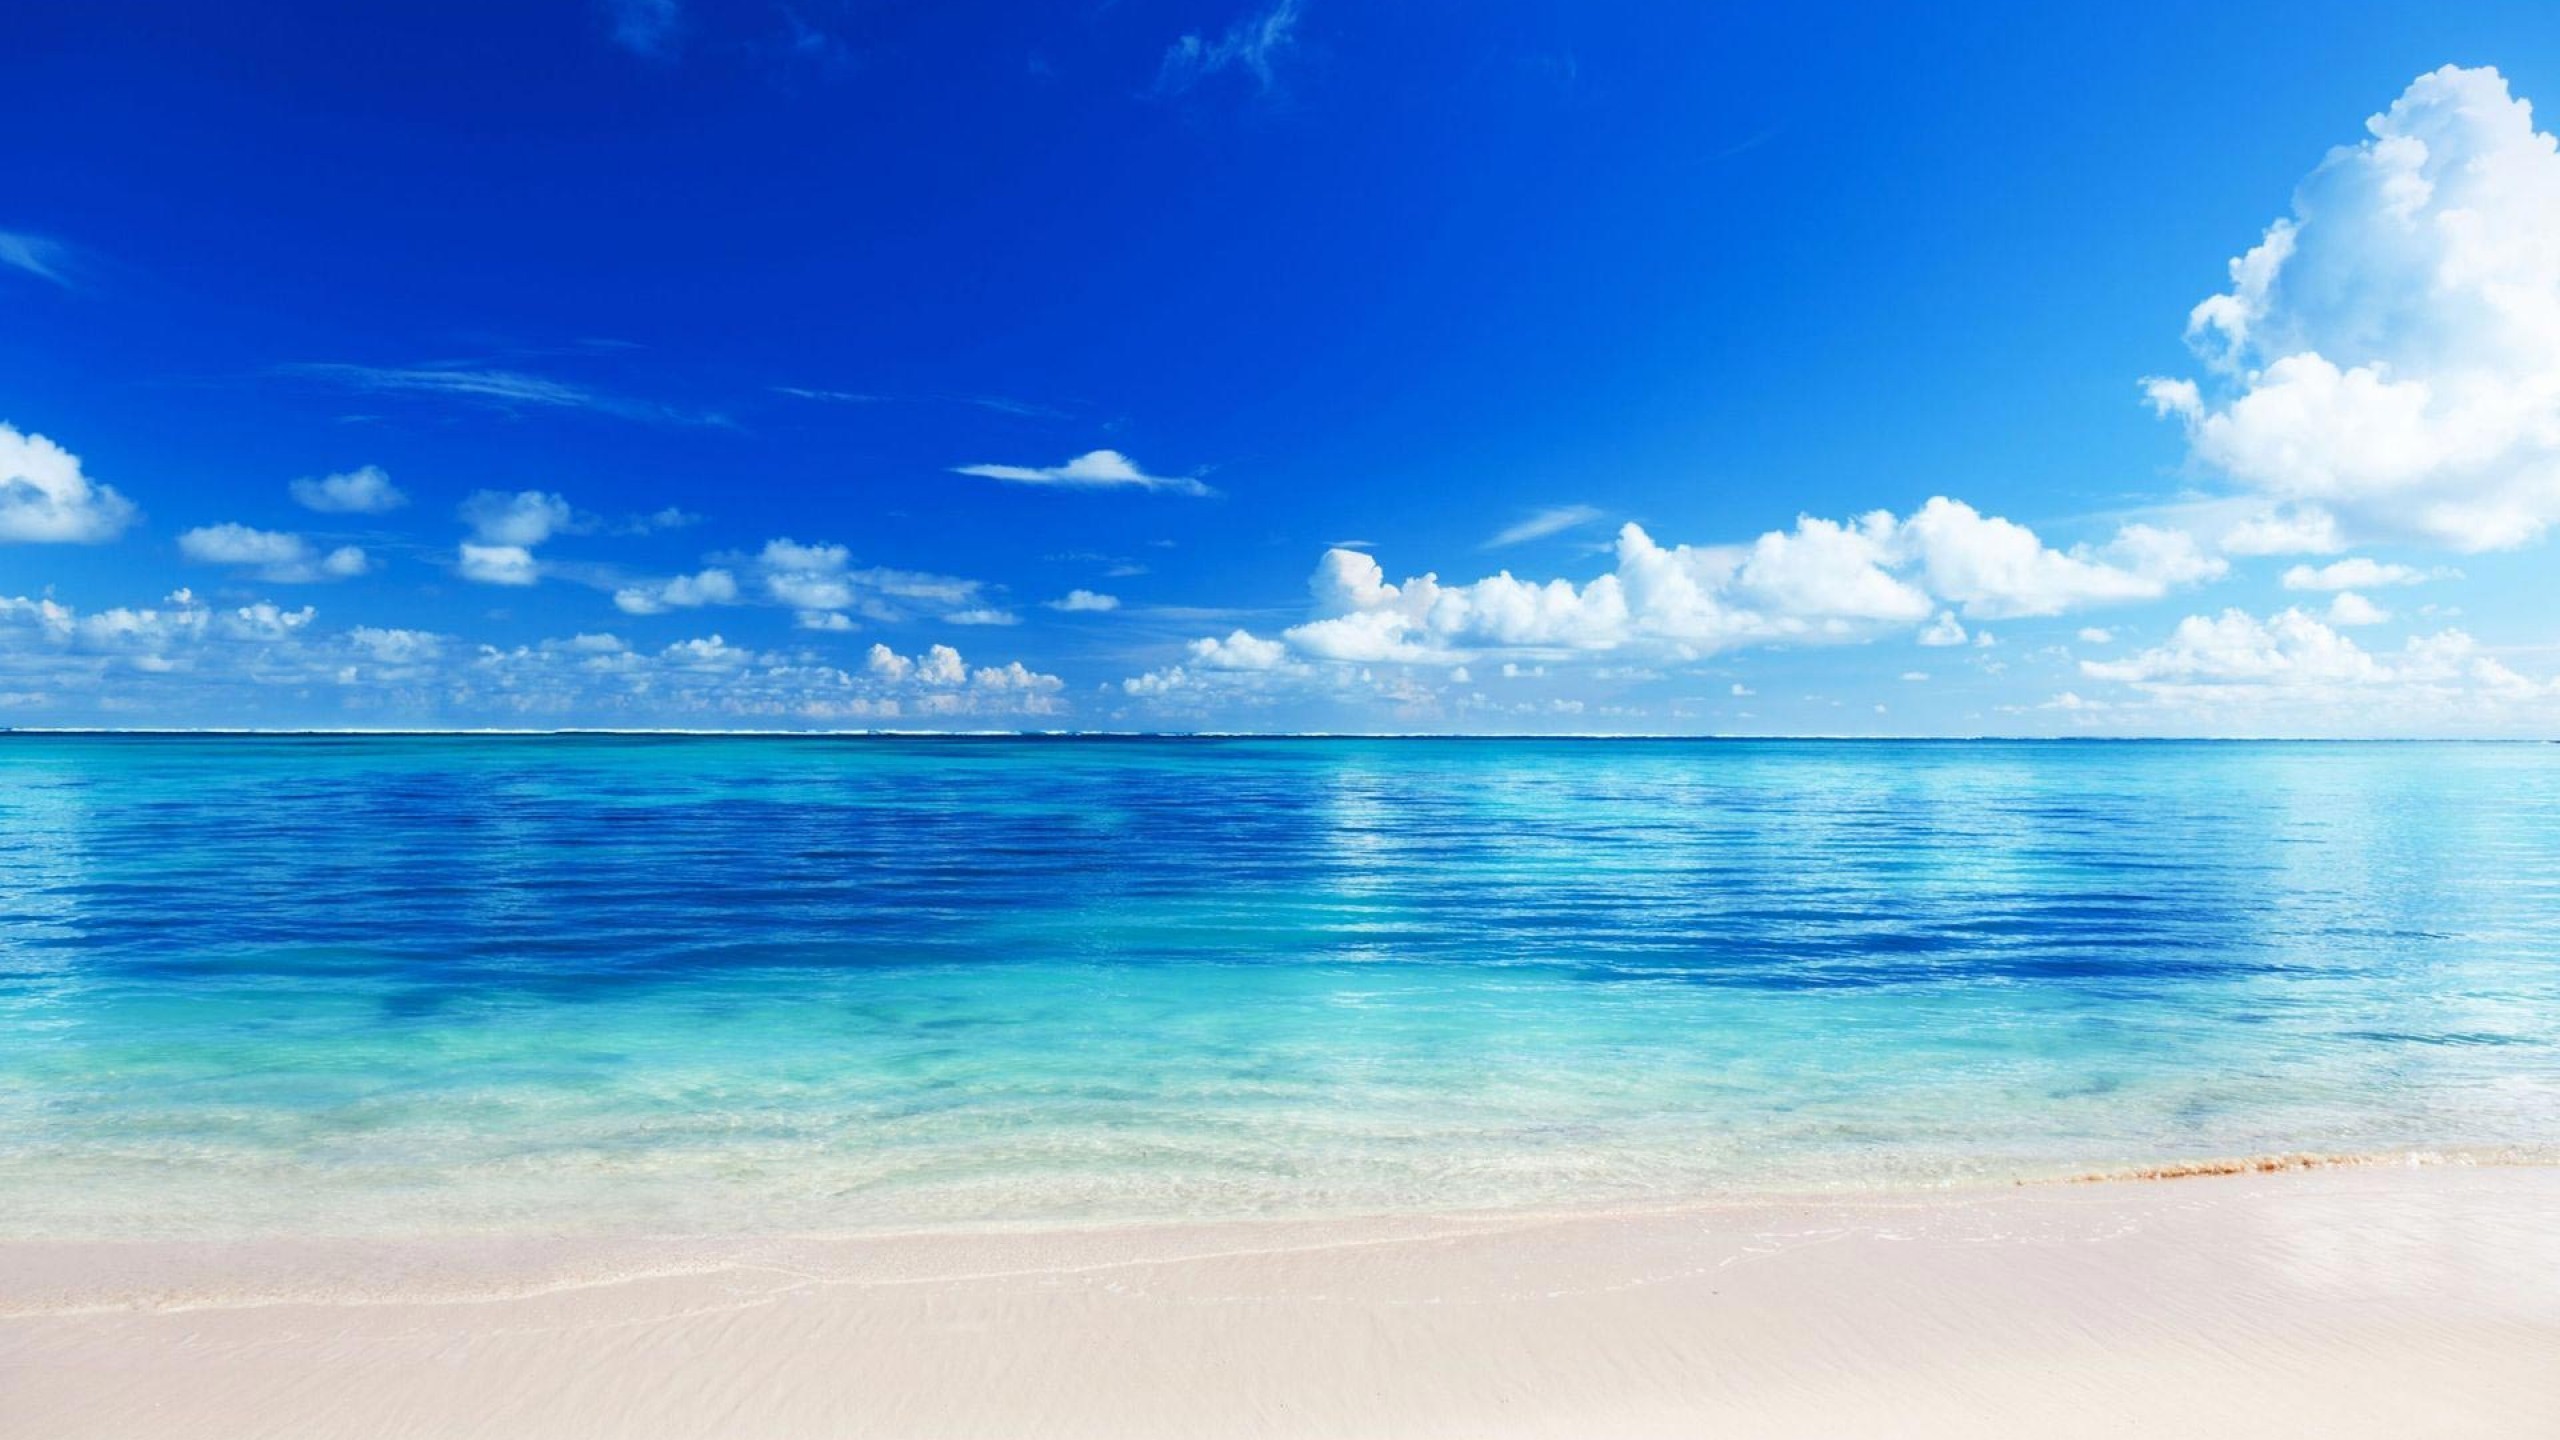 Hãy ngắm nhìn ảnh bìa biển đẹp đến ngỡ ngàng này! Được chụp tại một bãi biển tuyệt đẹp, hình ảnh này sẽ khiến bạn muốn đặt chân đến ngay lập tức. Màu xanh biển trong vắt kết hợp với nắng vàng rực rỡ sẽ làm cho bạn cảm thấy như đang sống trong một bức tranh hoàn hảo.